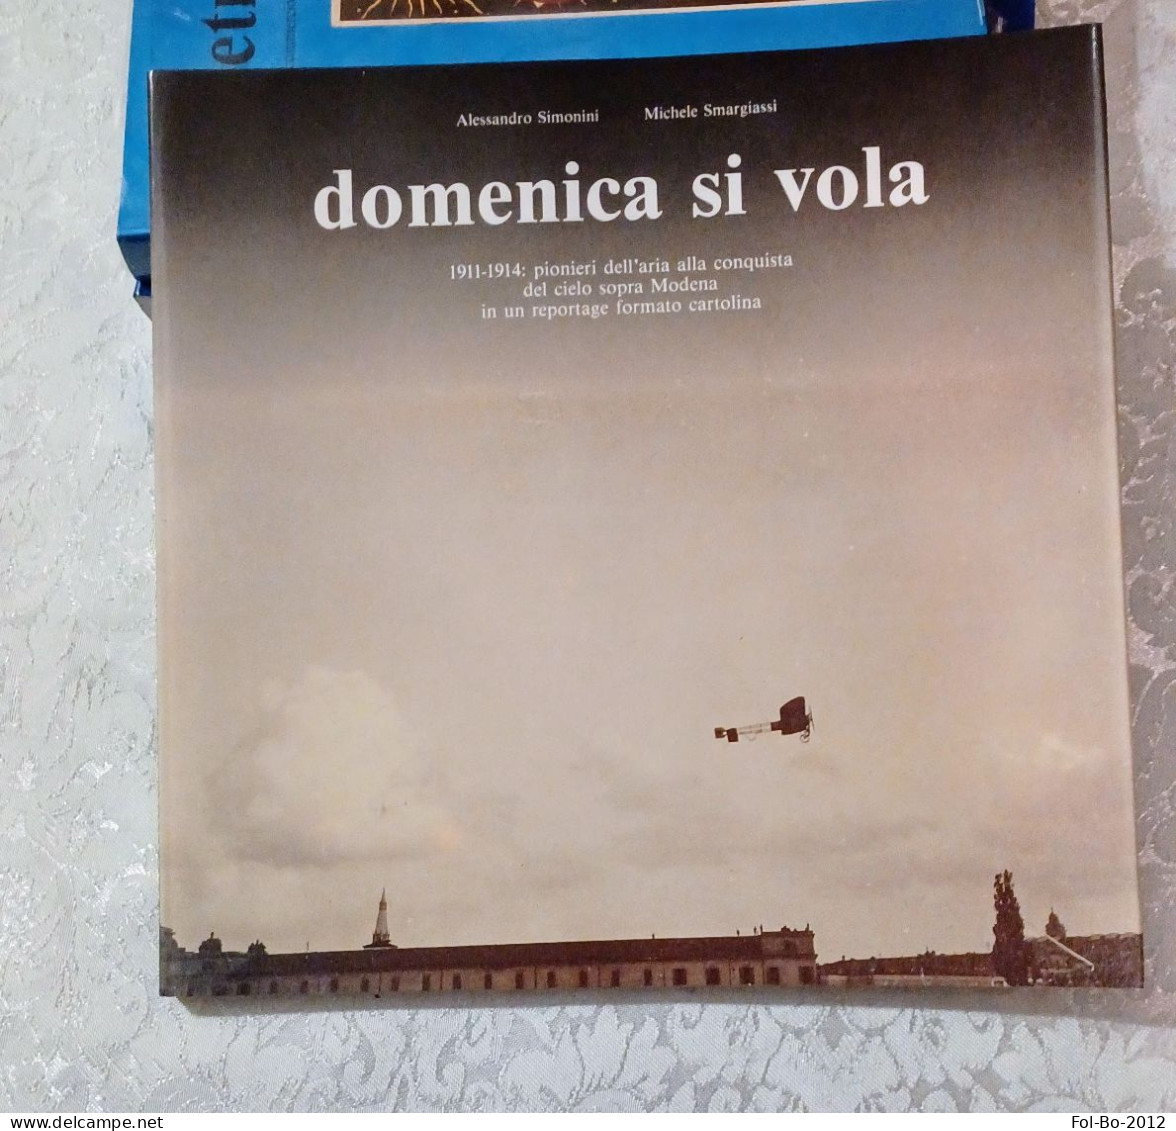 Domenica Si Vola 1911/1914 Pionieri Dell'aria Nei Cieli Sopra Modena Del 1990 - Boeken & Catalogi